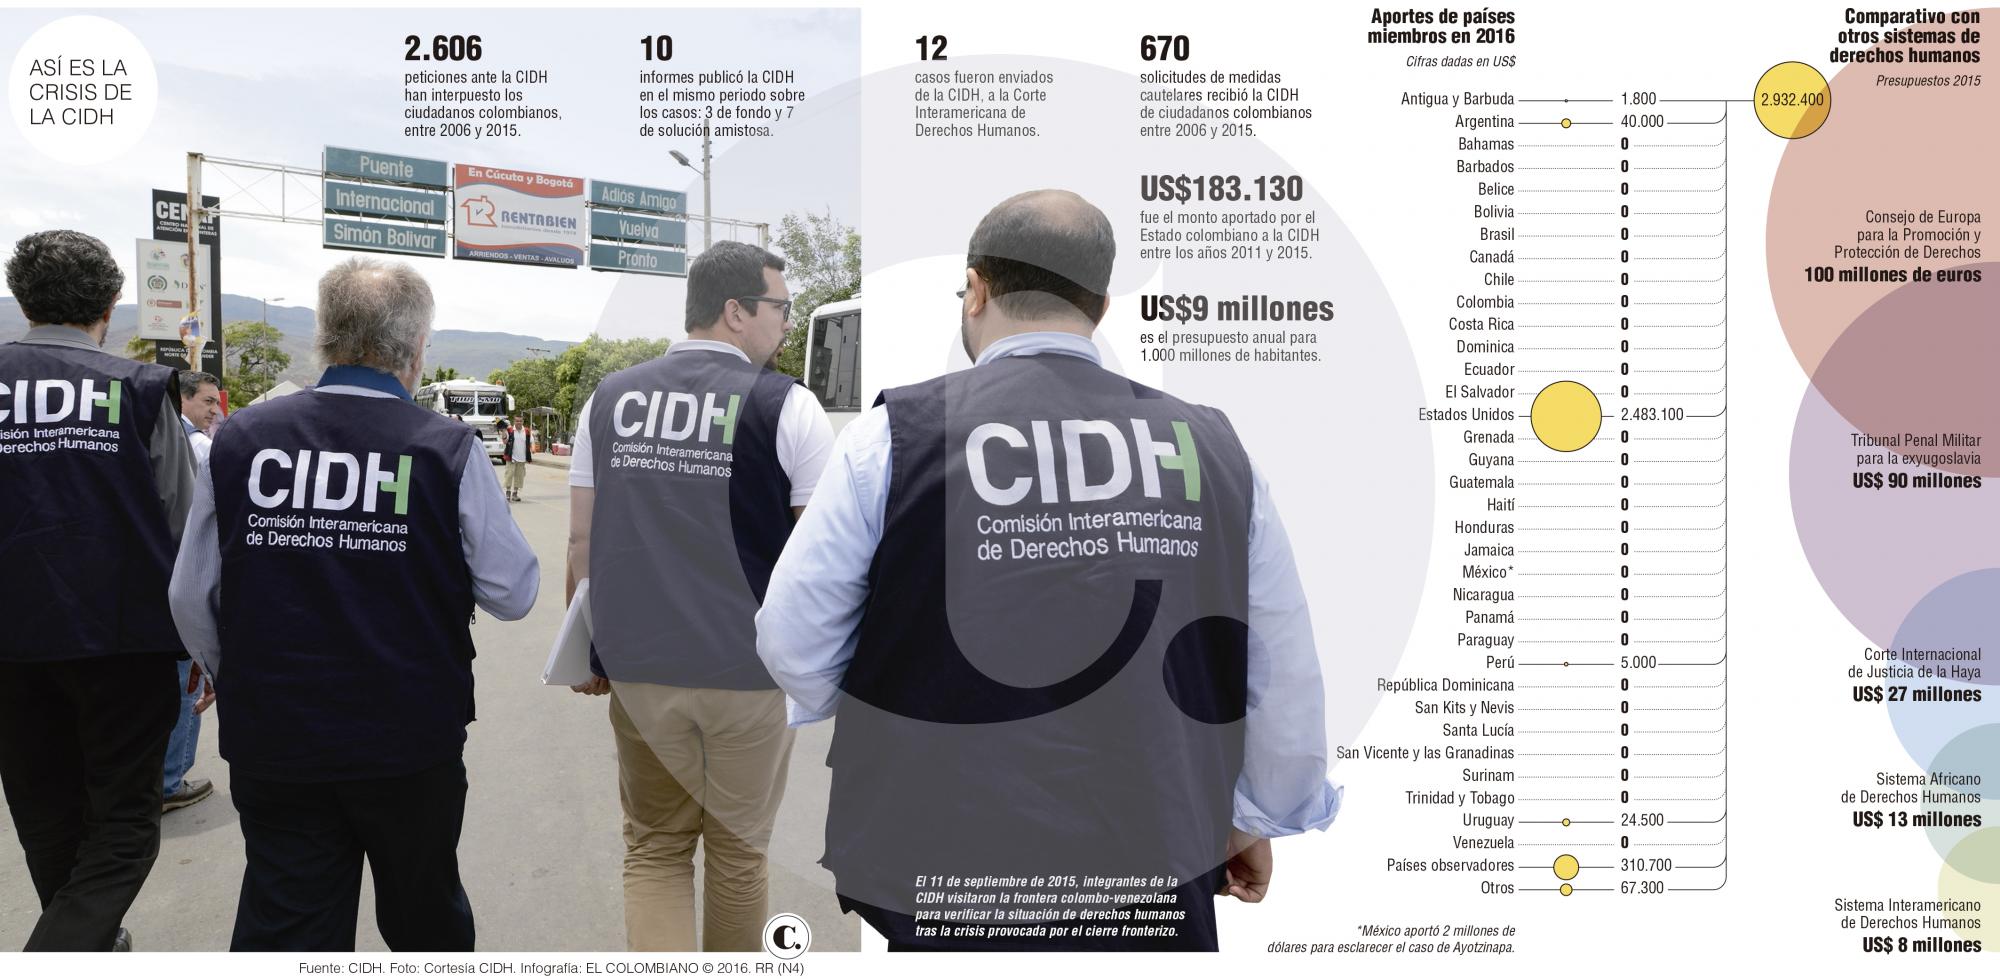 La crisis de la Cidh también afecta a Colombia